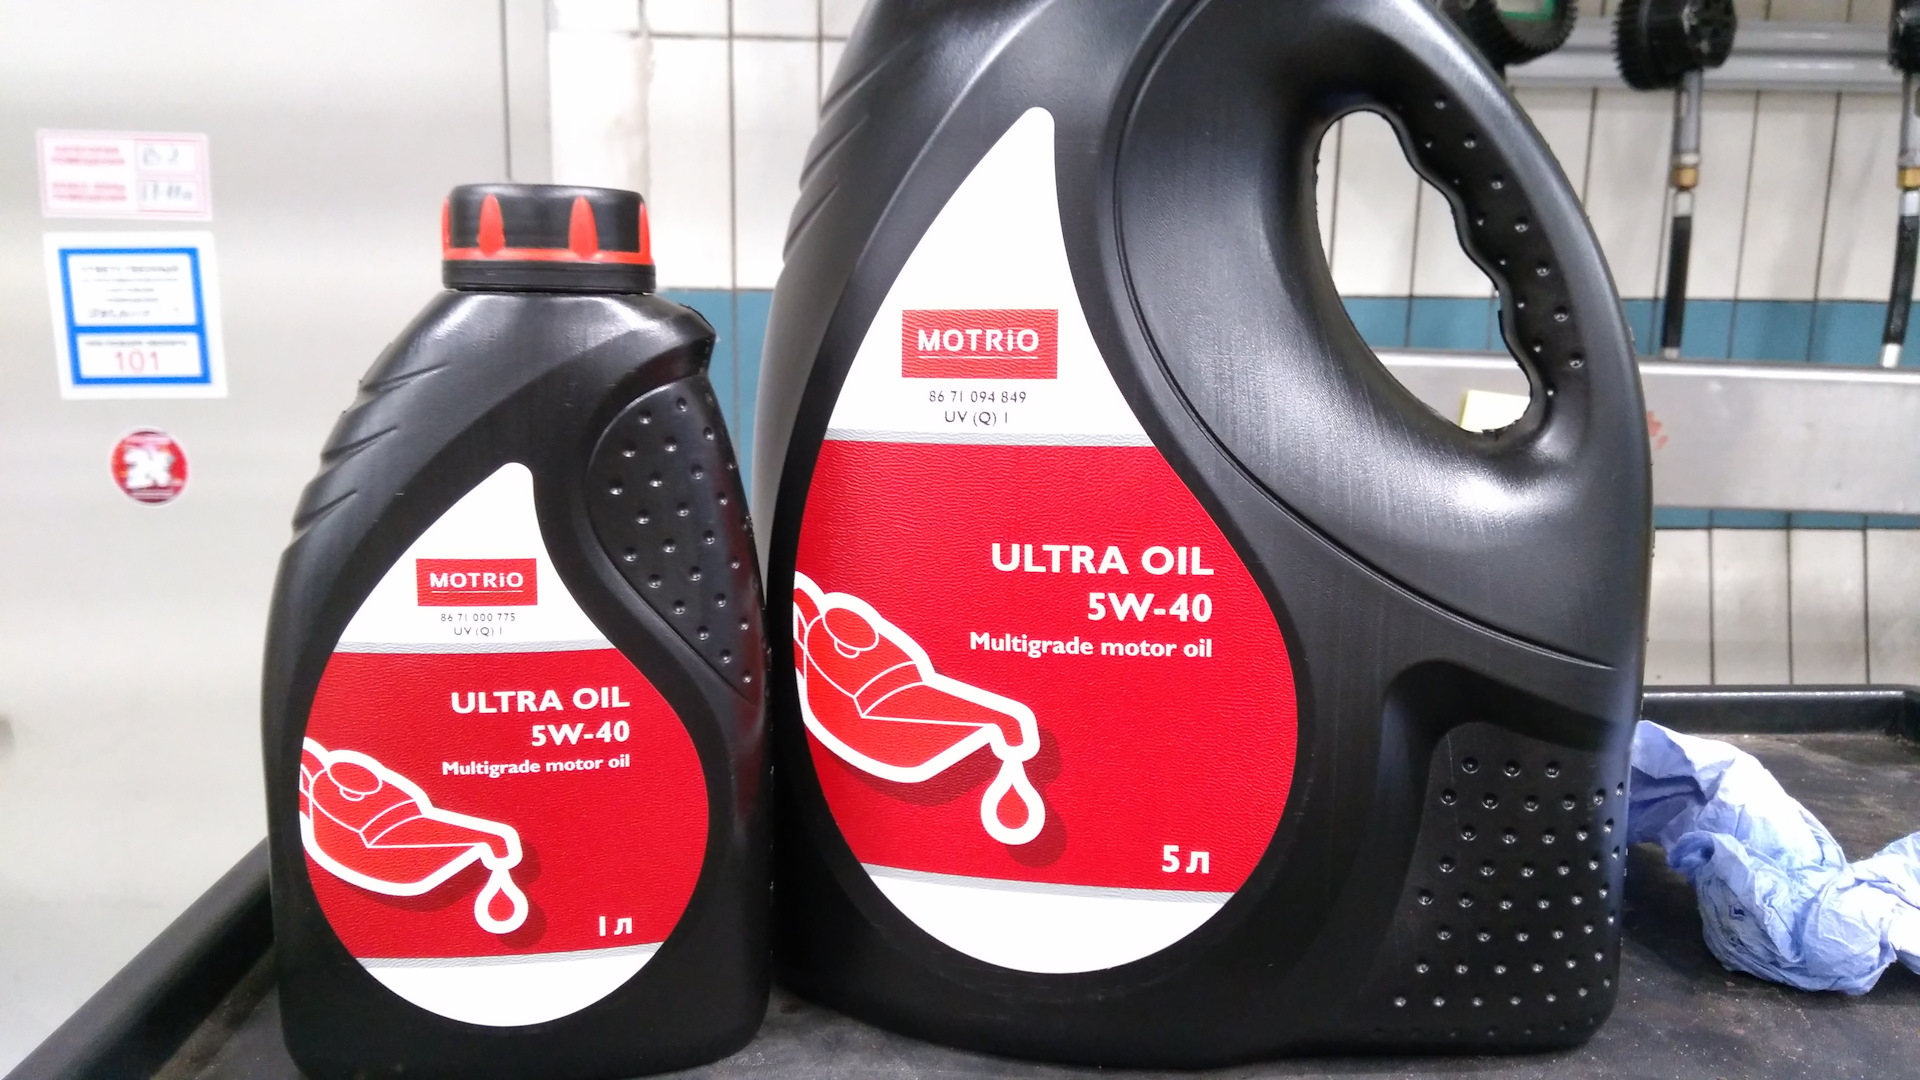 Рено логан масло лукойл. Motrio 5w40. Масло motrio Ultra Oil. Renault : 8671094849. Motrio 8671094849 масло motrio Ultra 5w40.